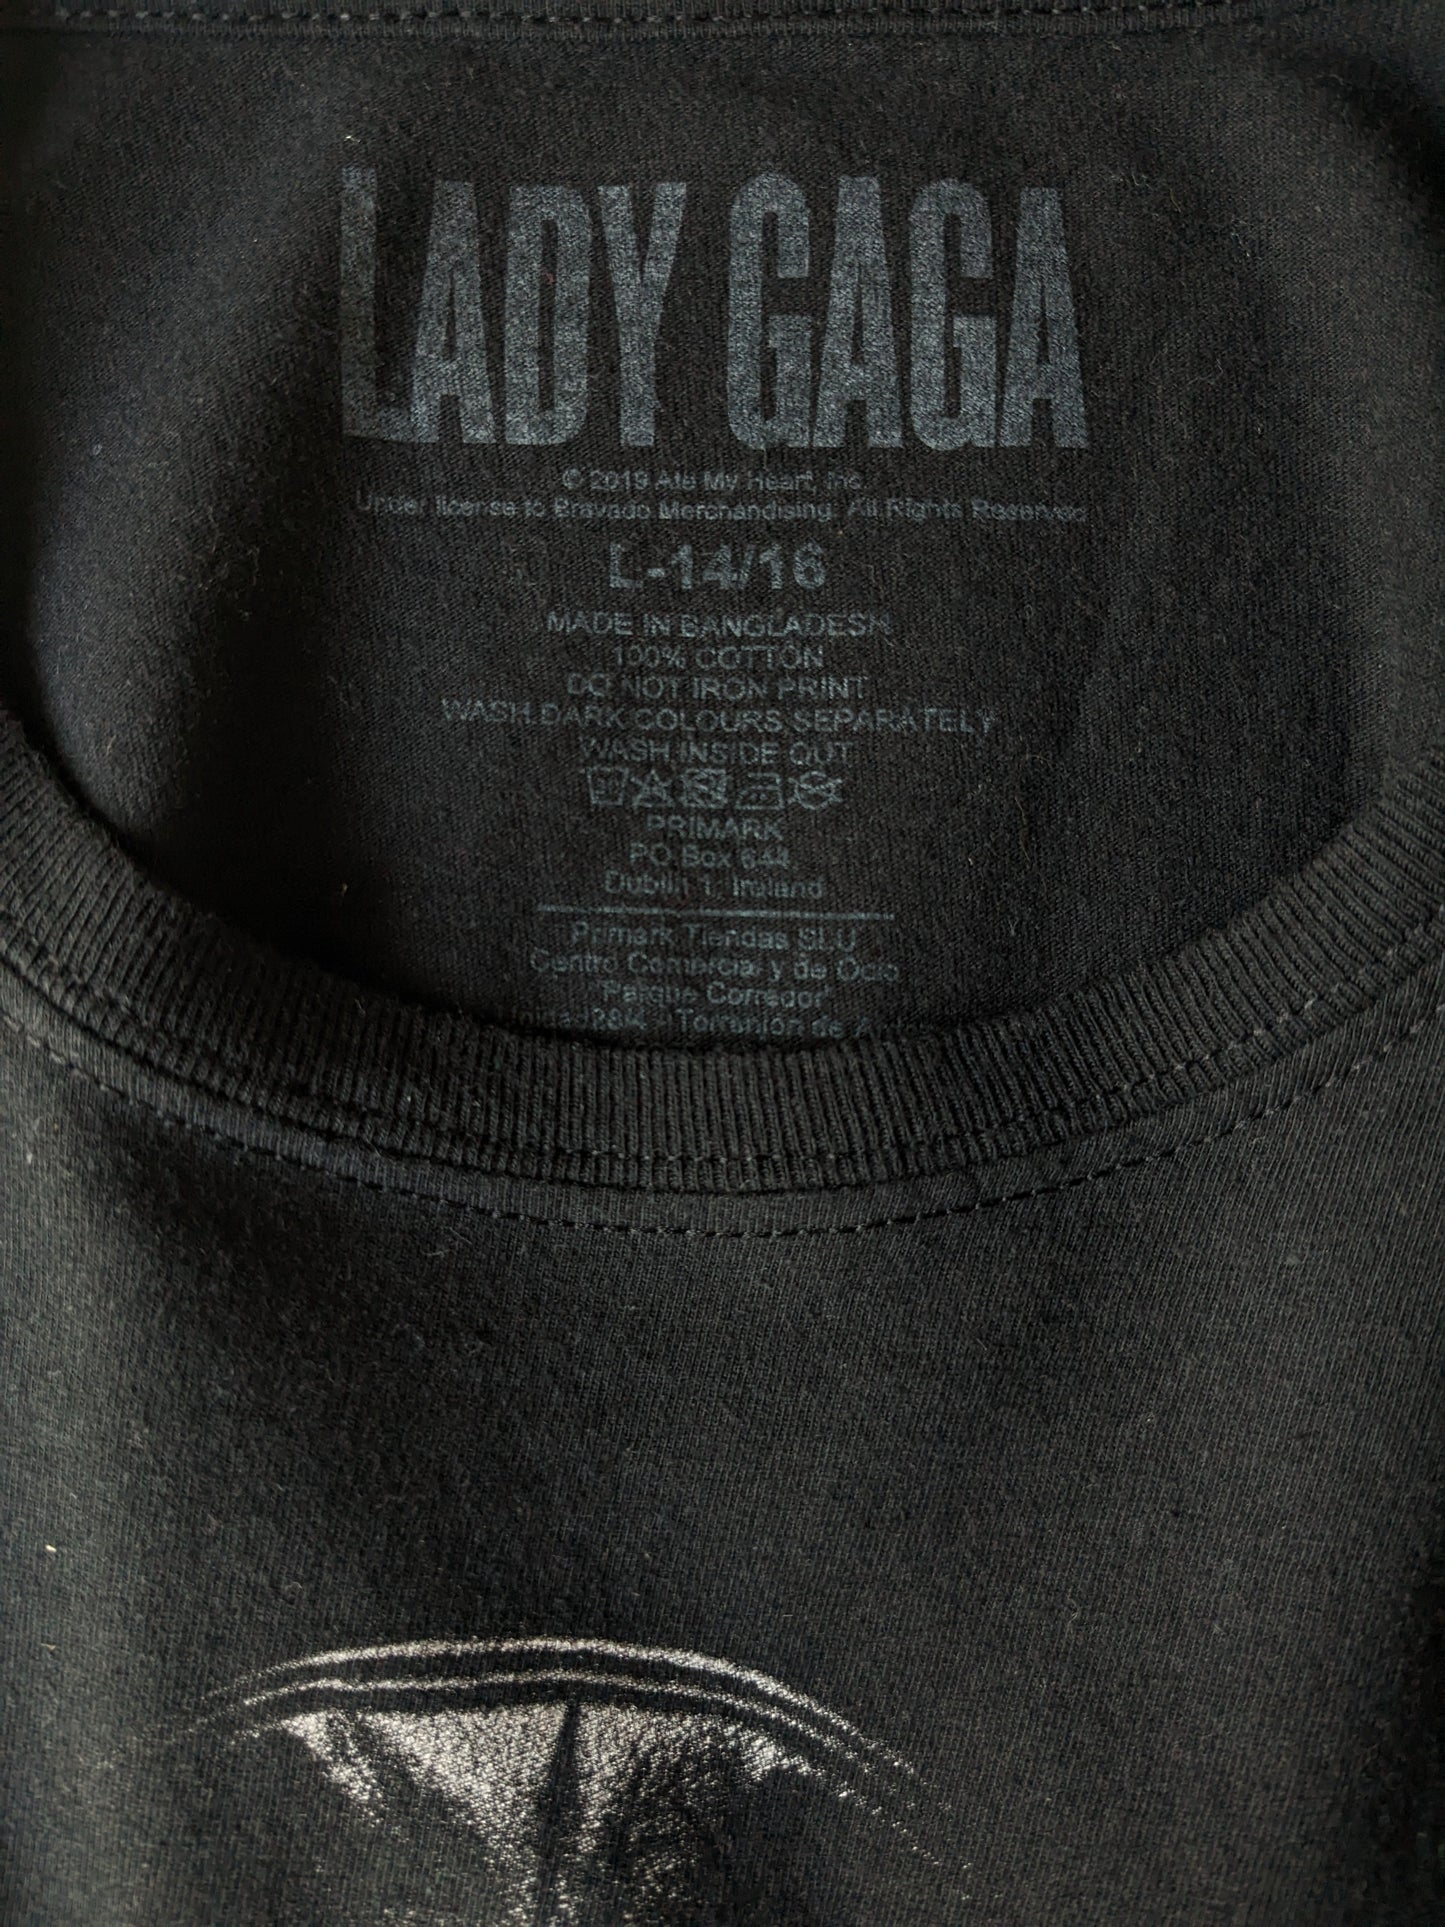 Camicia Lady Gaga. Nero con stampa. Dimensioni L per bambini / S per adulti.